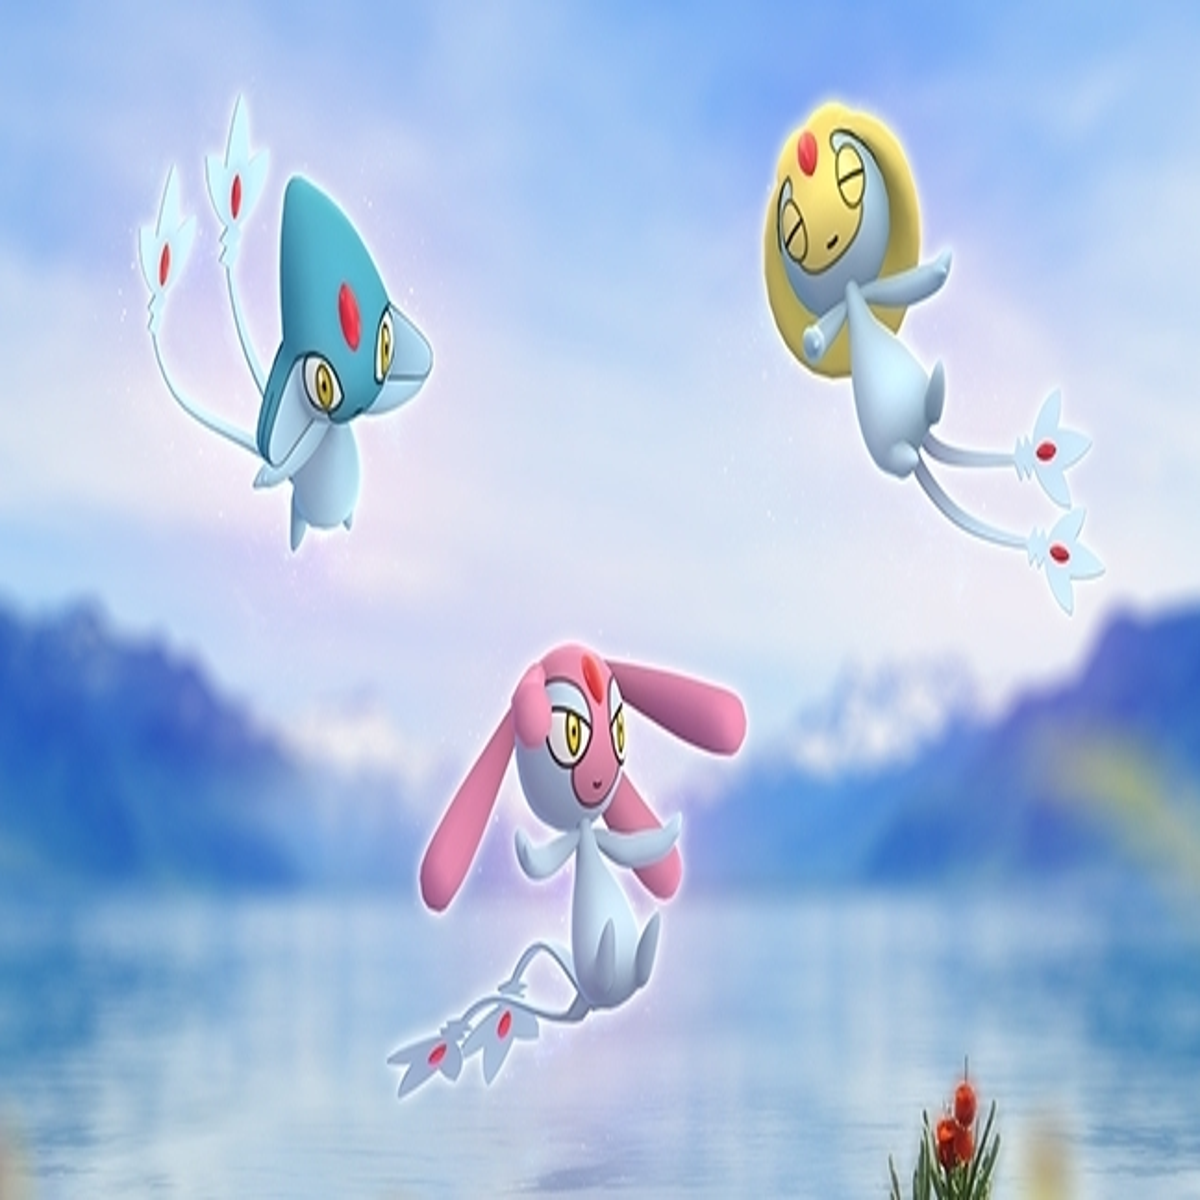 Pokémon Go libera novas criaturas lendárias: Uxie, Mesprit e Azlef